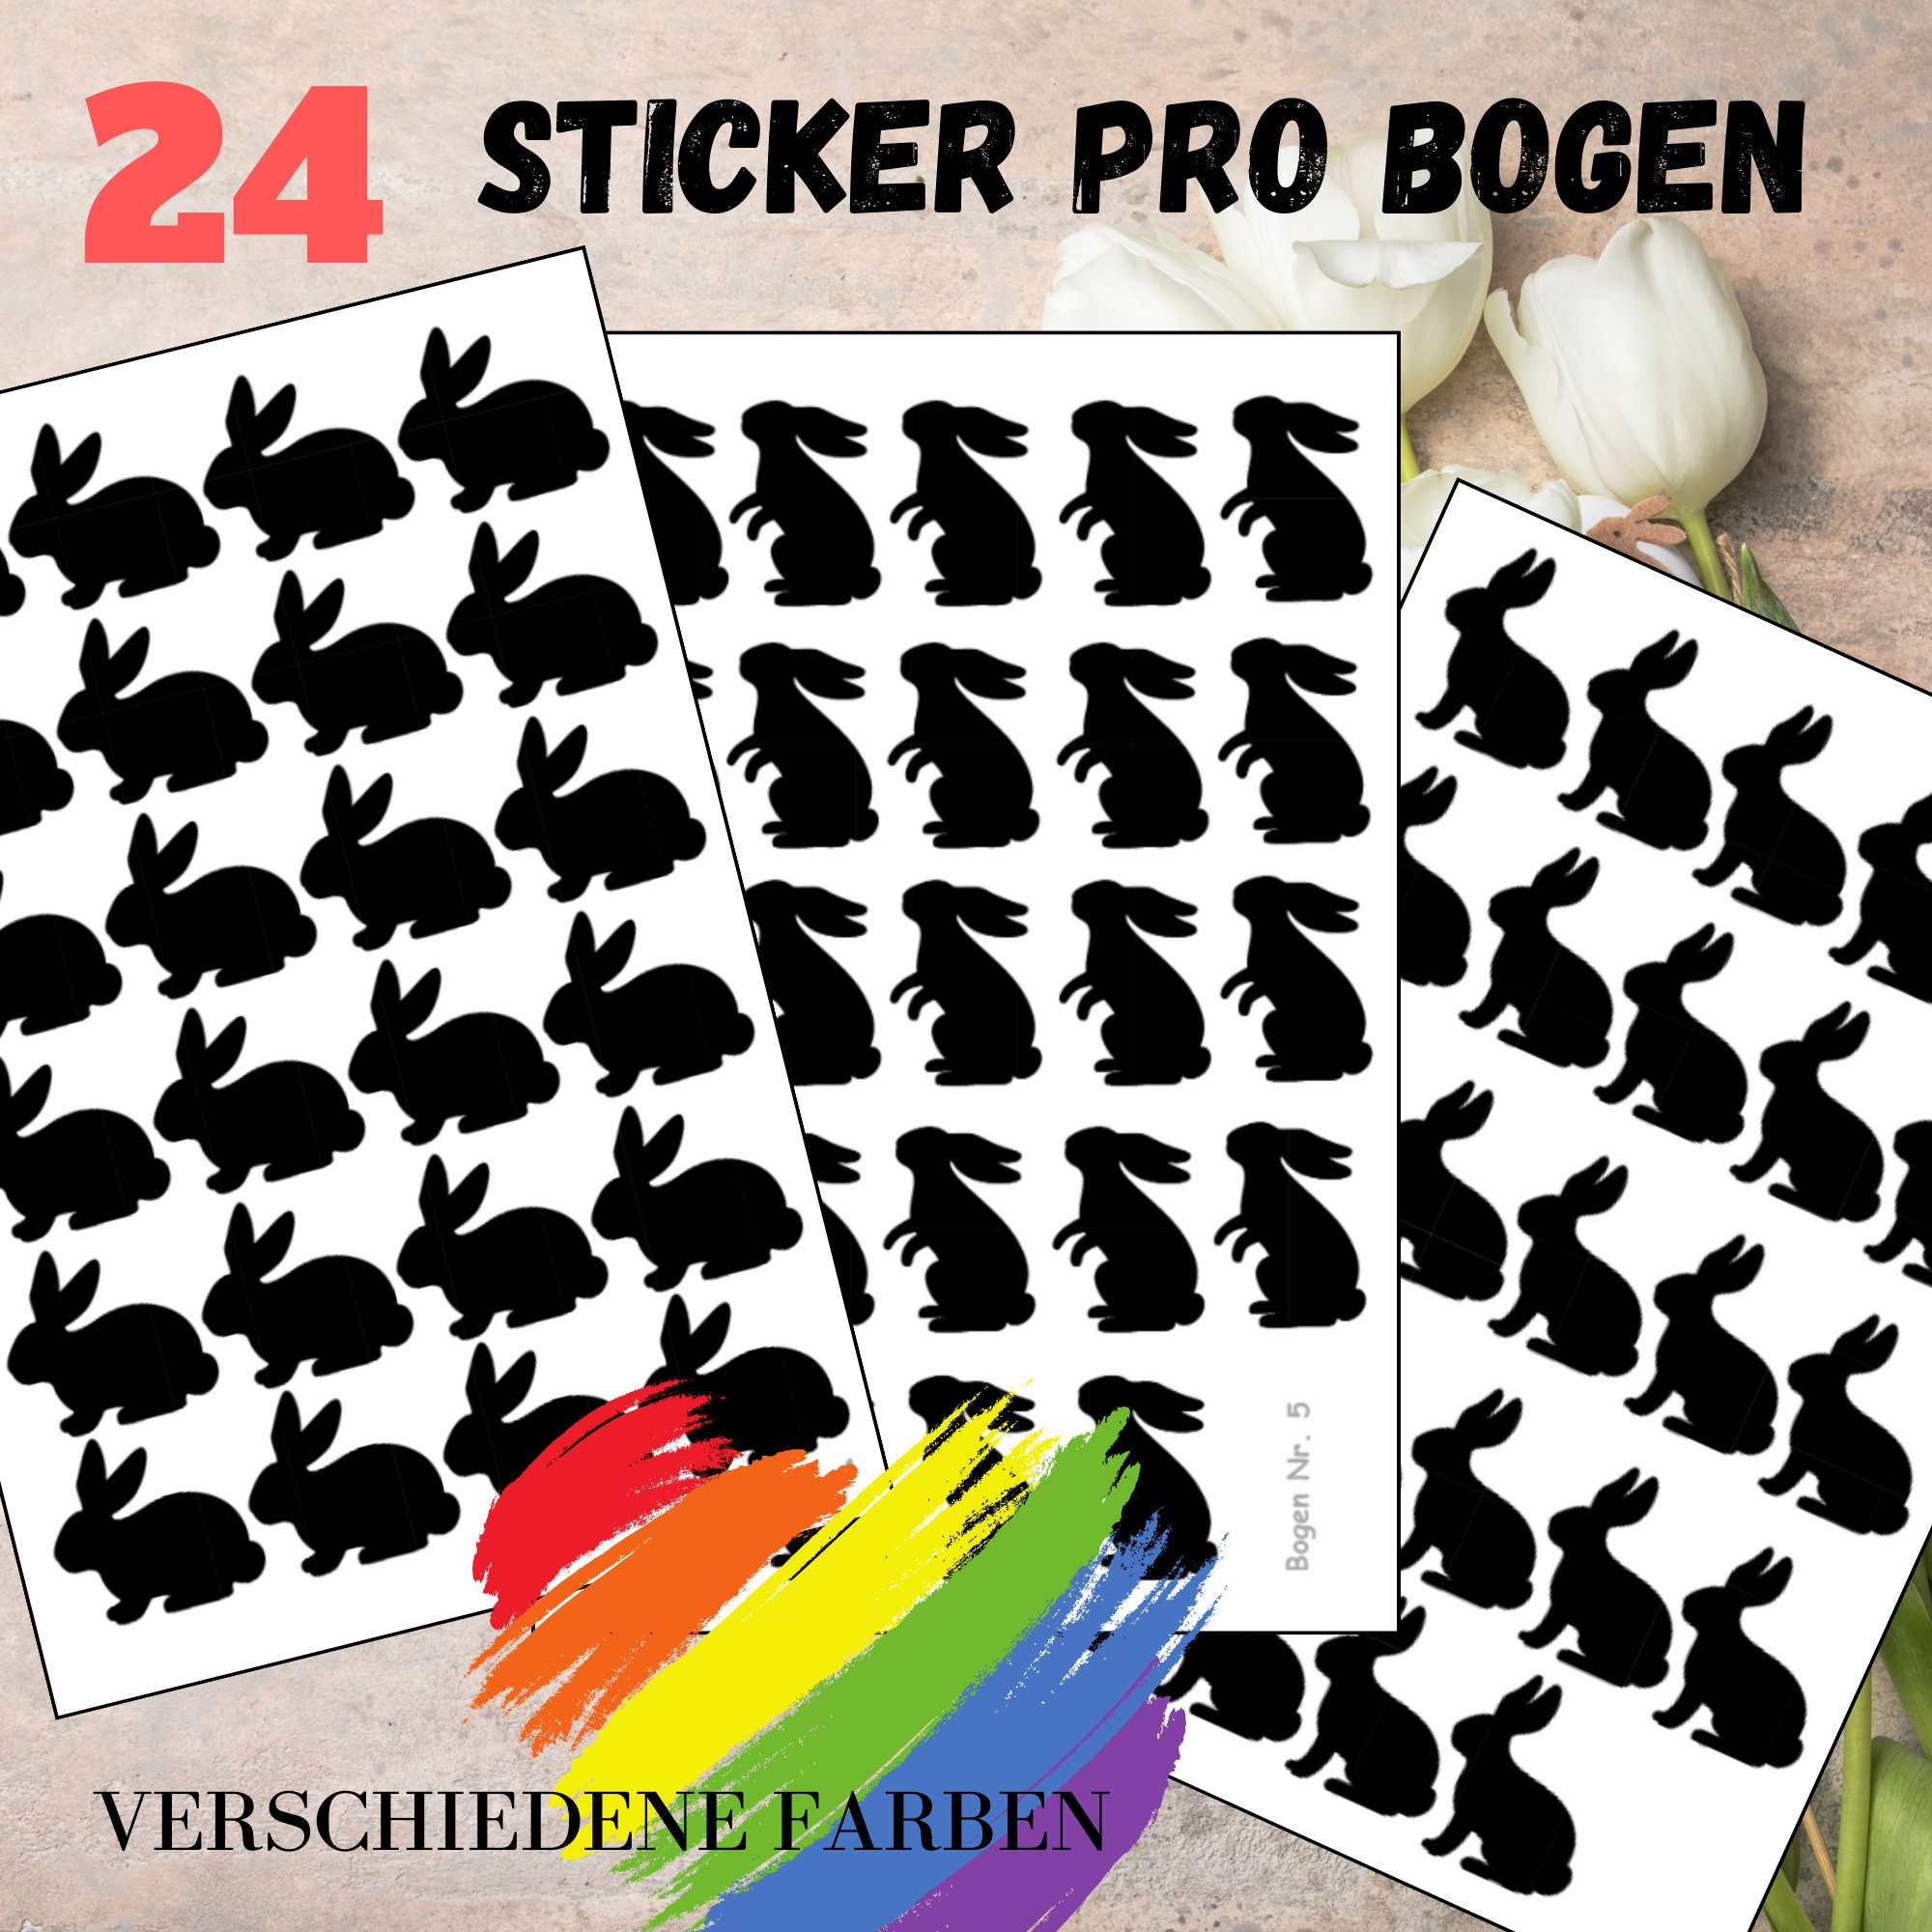 Sticker Bogen - Ostern Hase | 24 Sticker pro Bogen - Journal Sticker - Aufkleber 3 Bögen zur Auswahl I Farbe wählbar